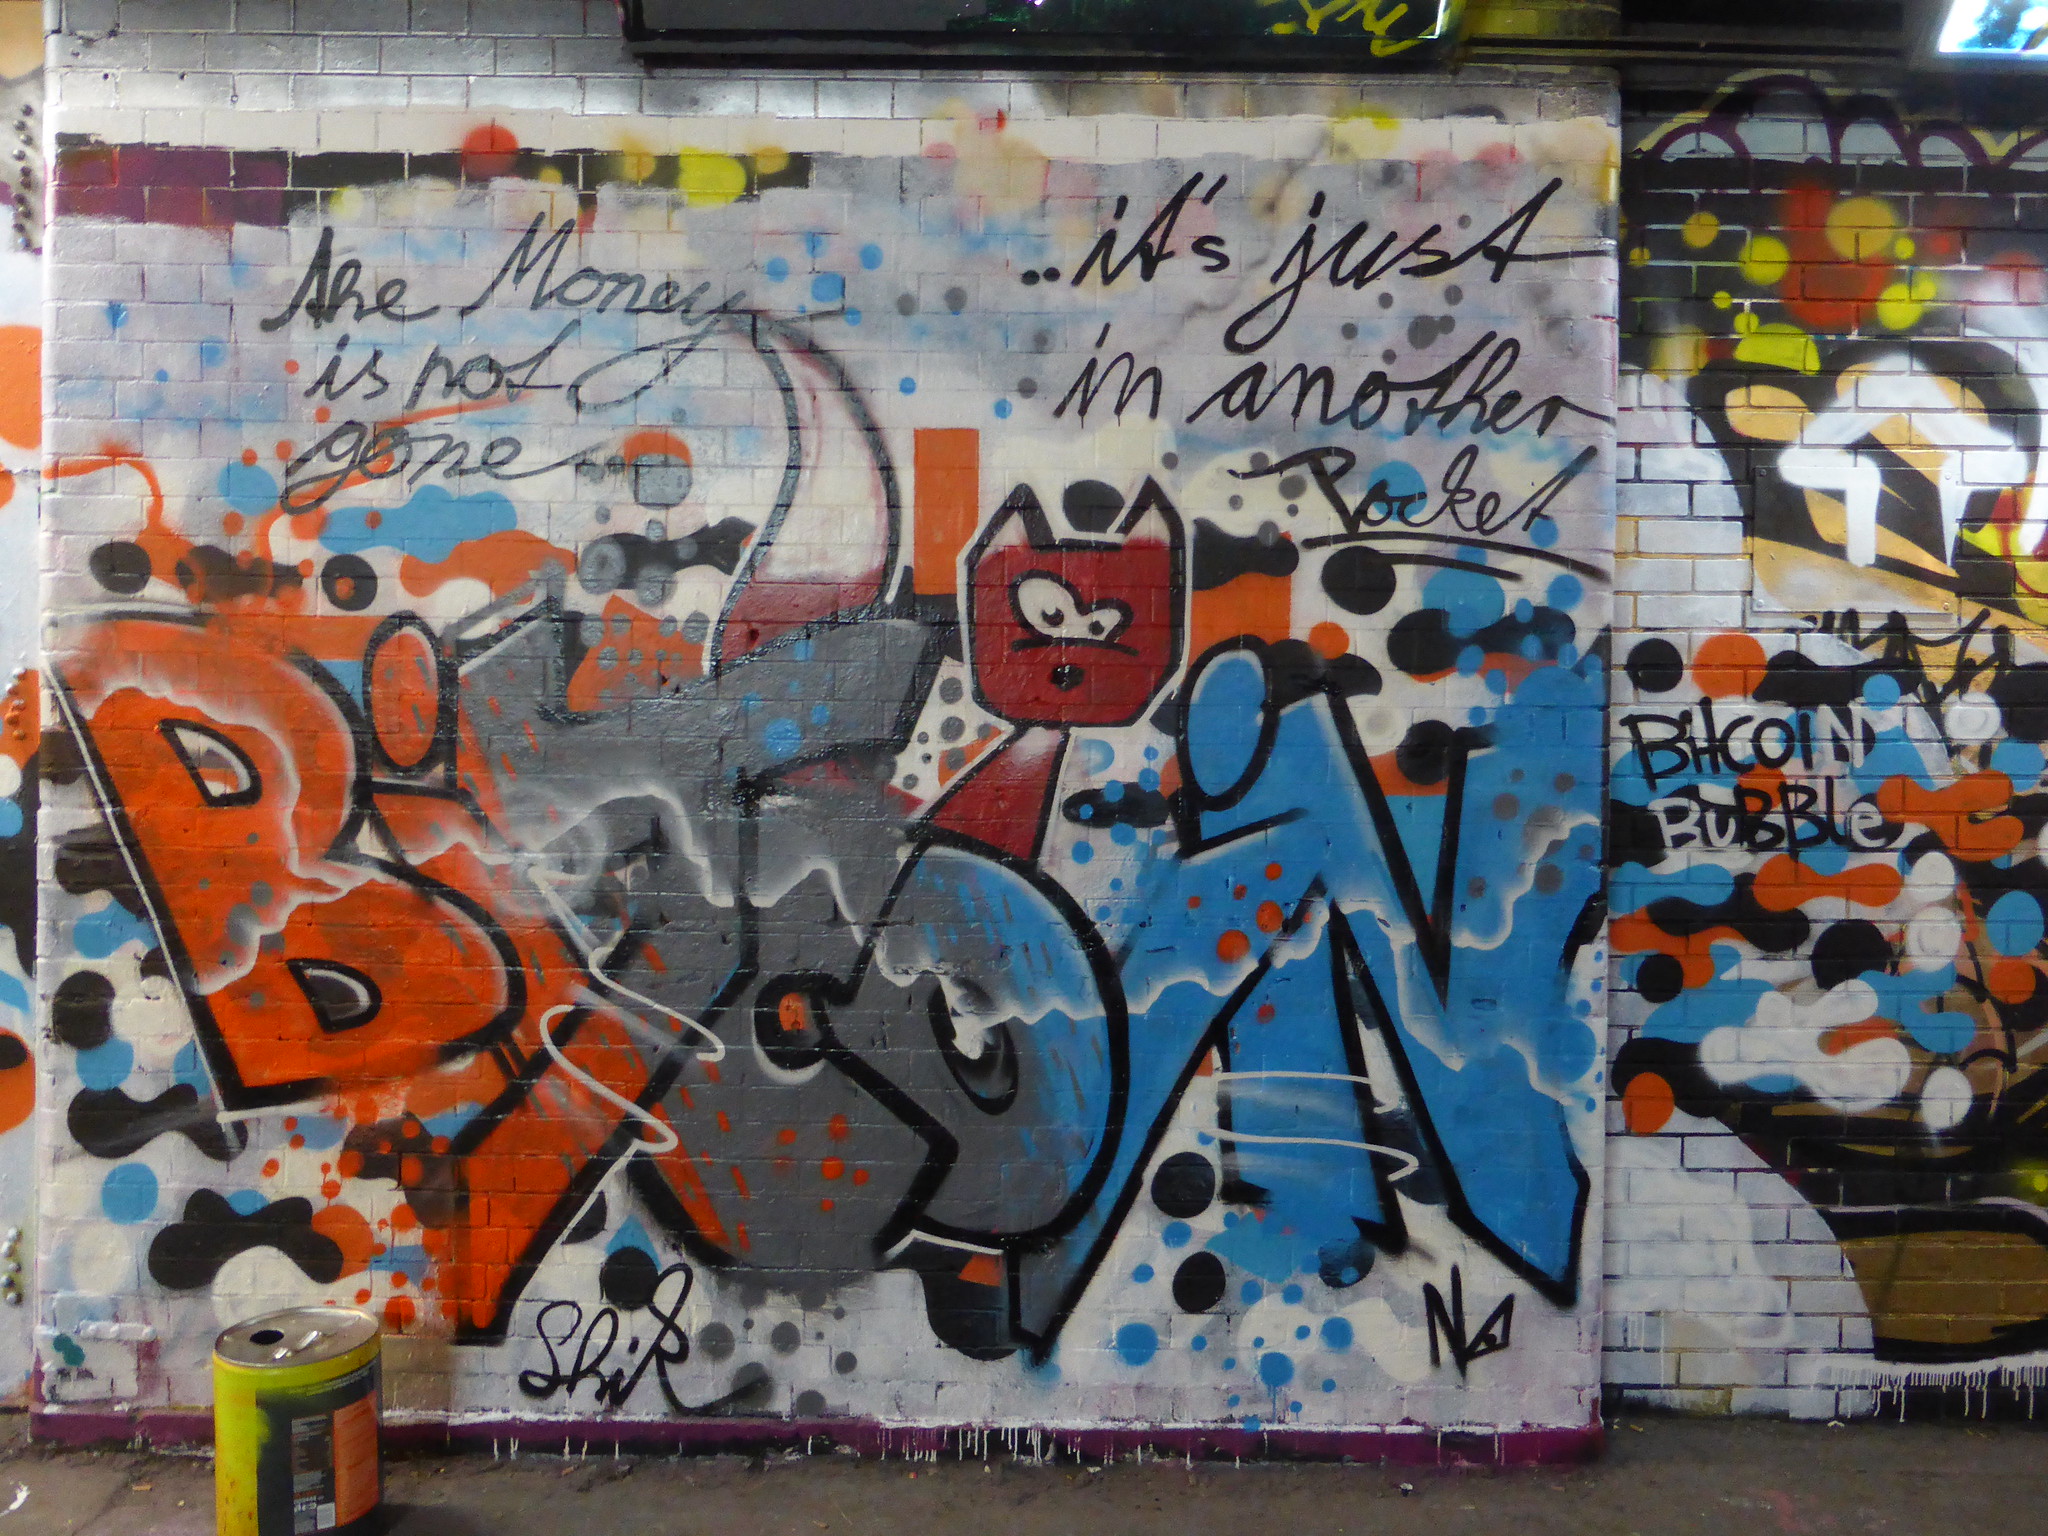 Bitcoin graffiti, Leake Street